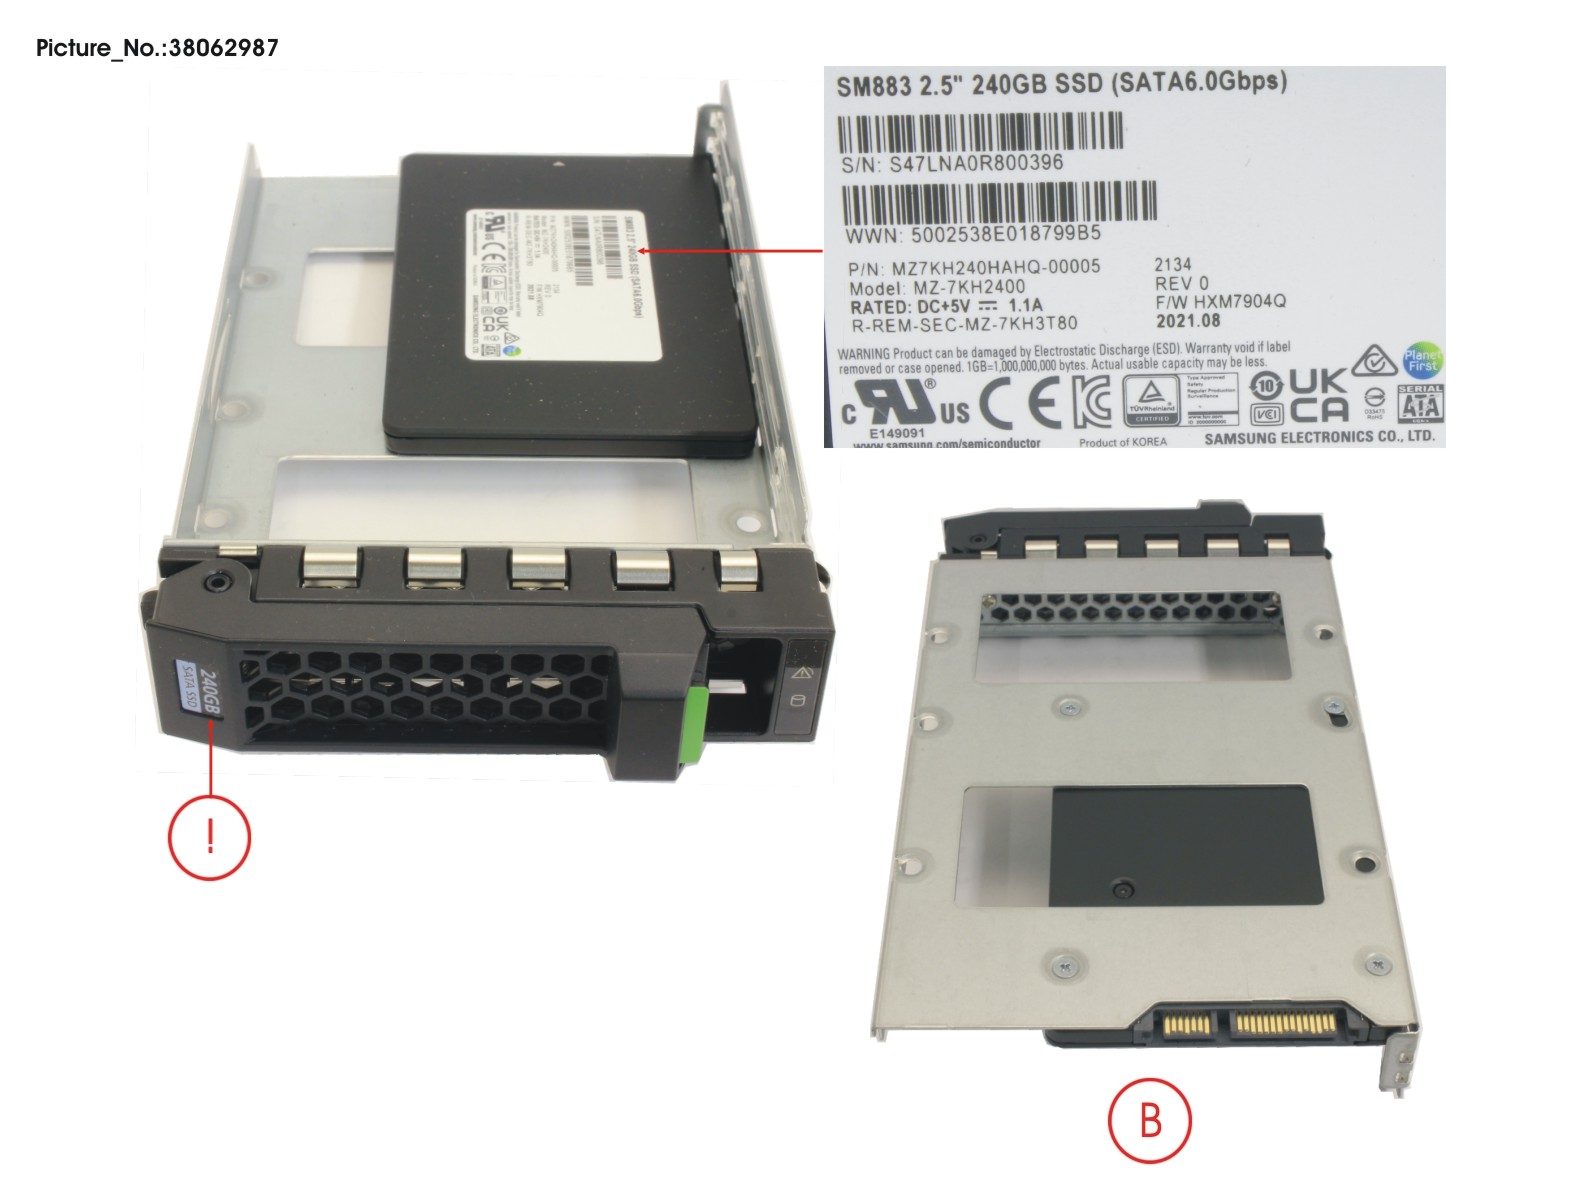 SSD SATA 6G 240GB MIXED-USE 3.5 H-P EP